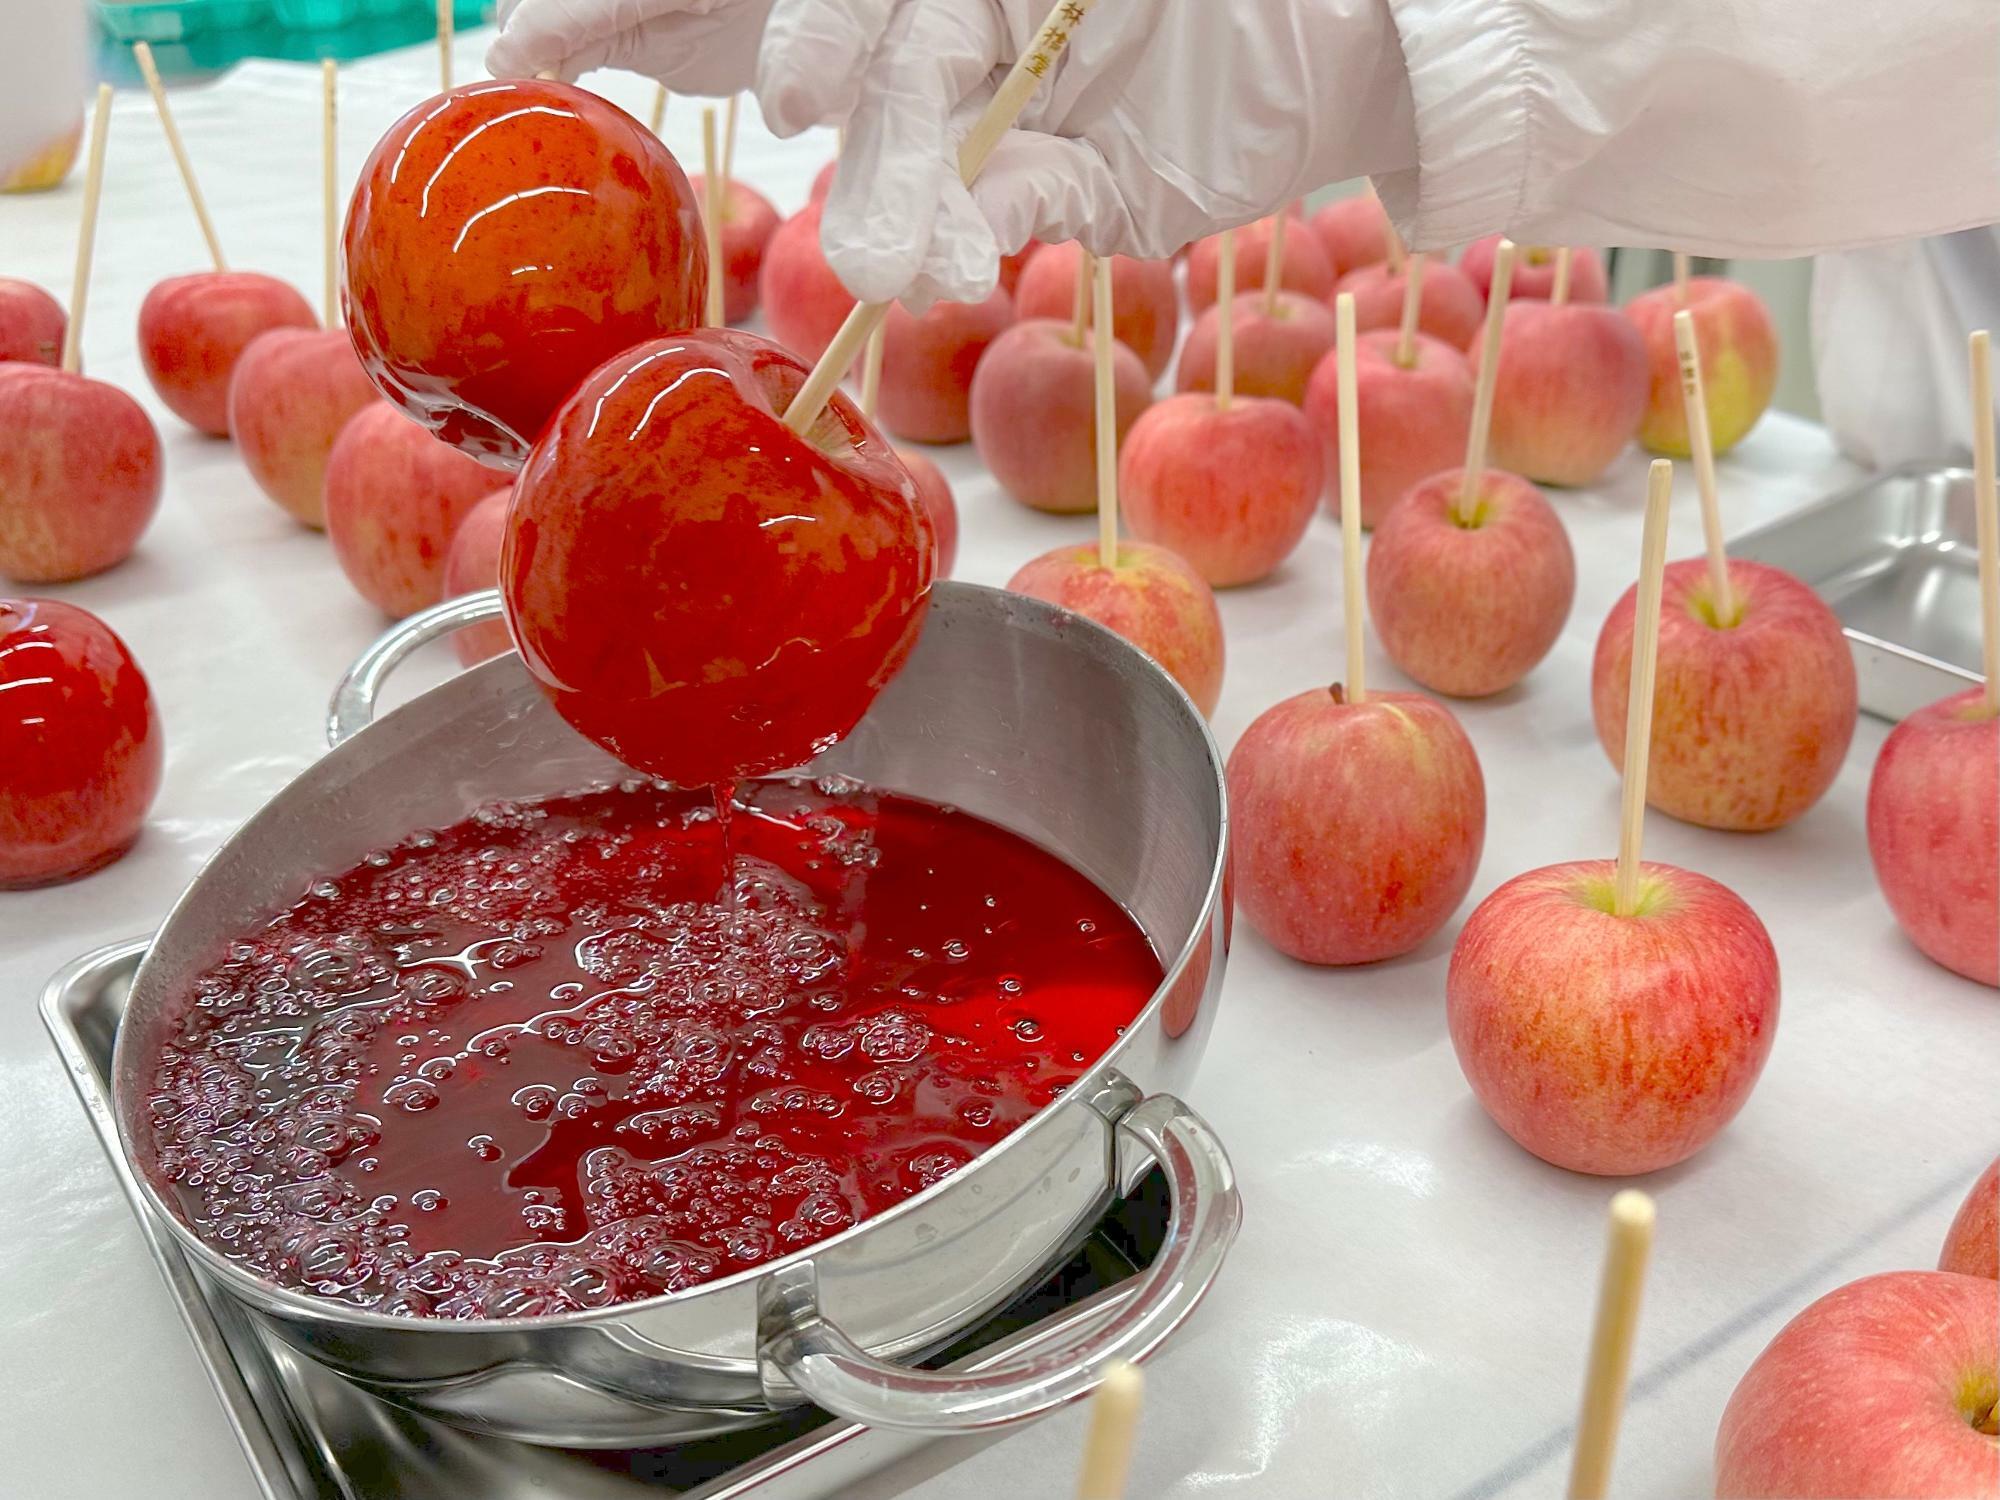 りんご飴が作られている様子。浦添市勢理客にある製造工場にて撮影。